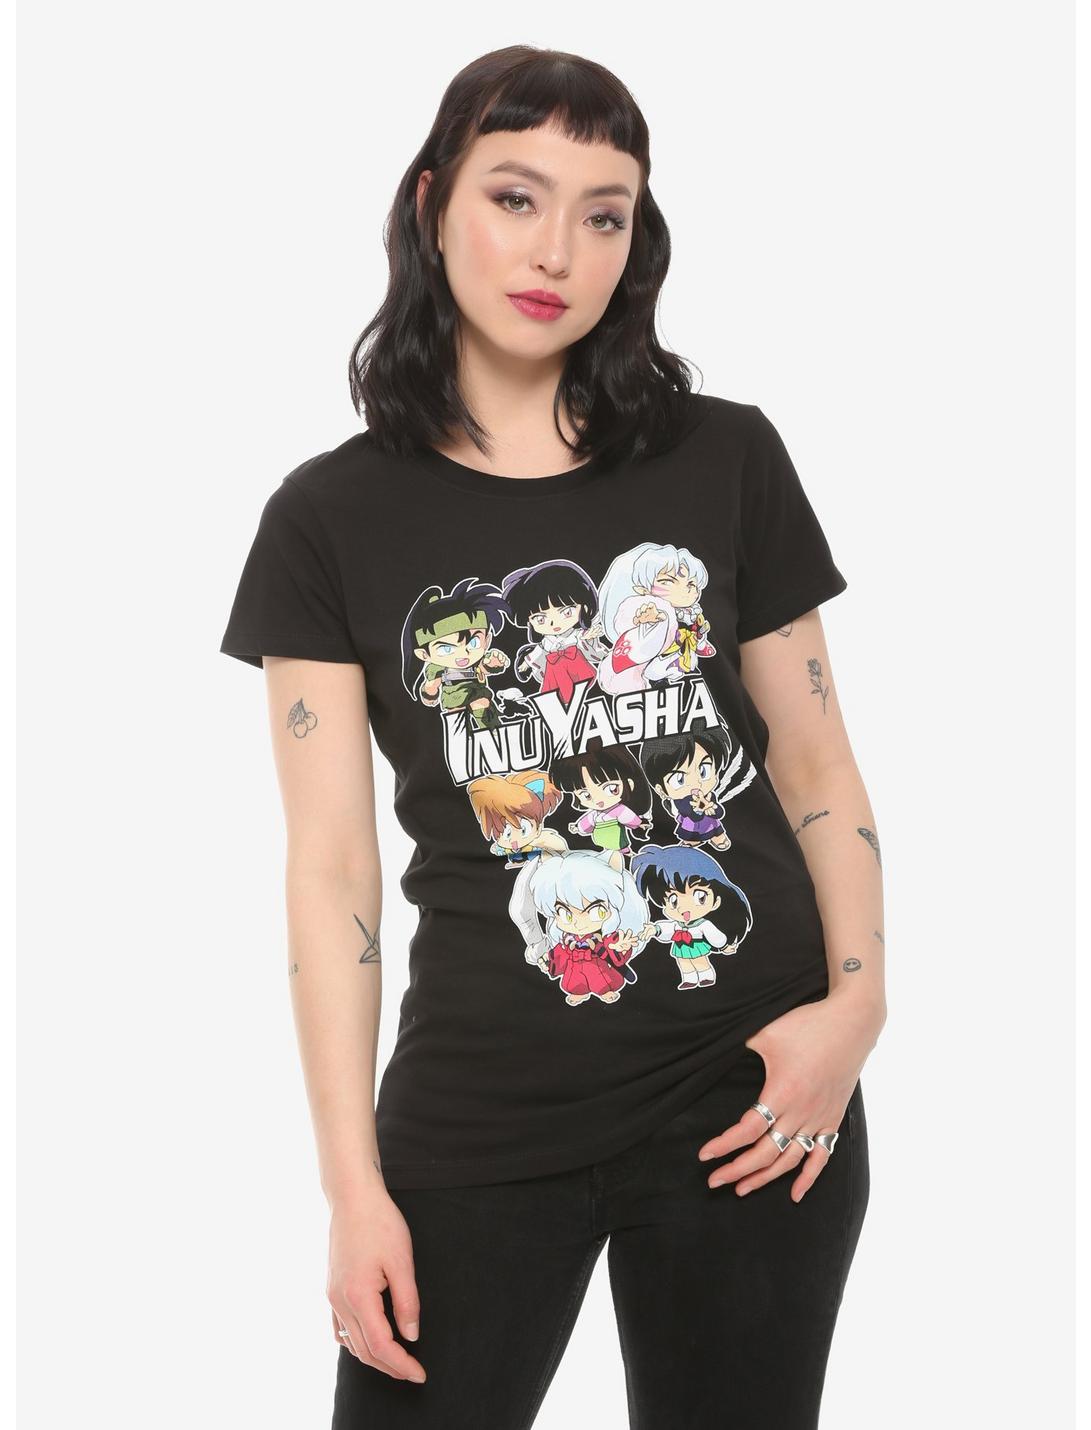 Inuyasha Chibi Group Girls T-Shirt, MULTI, hi-res